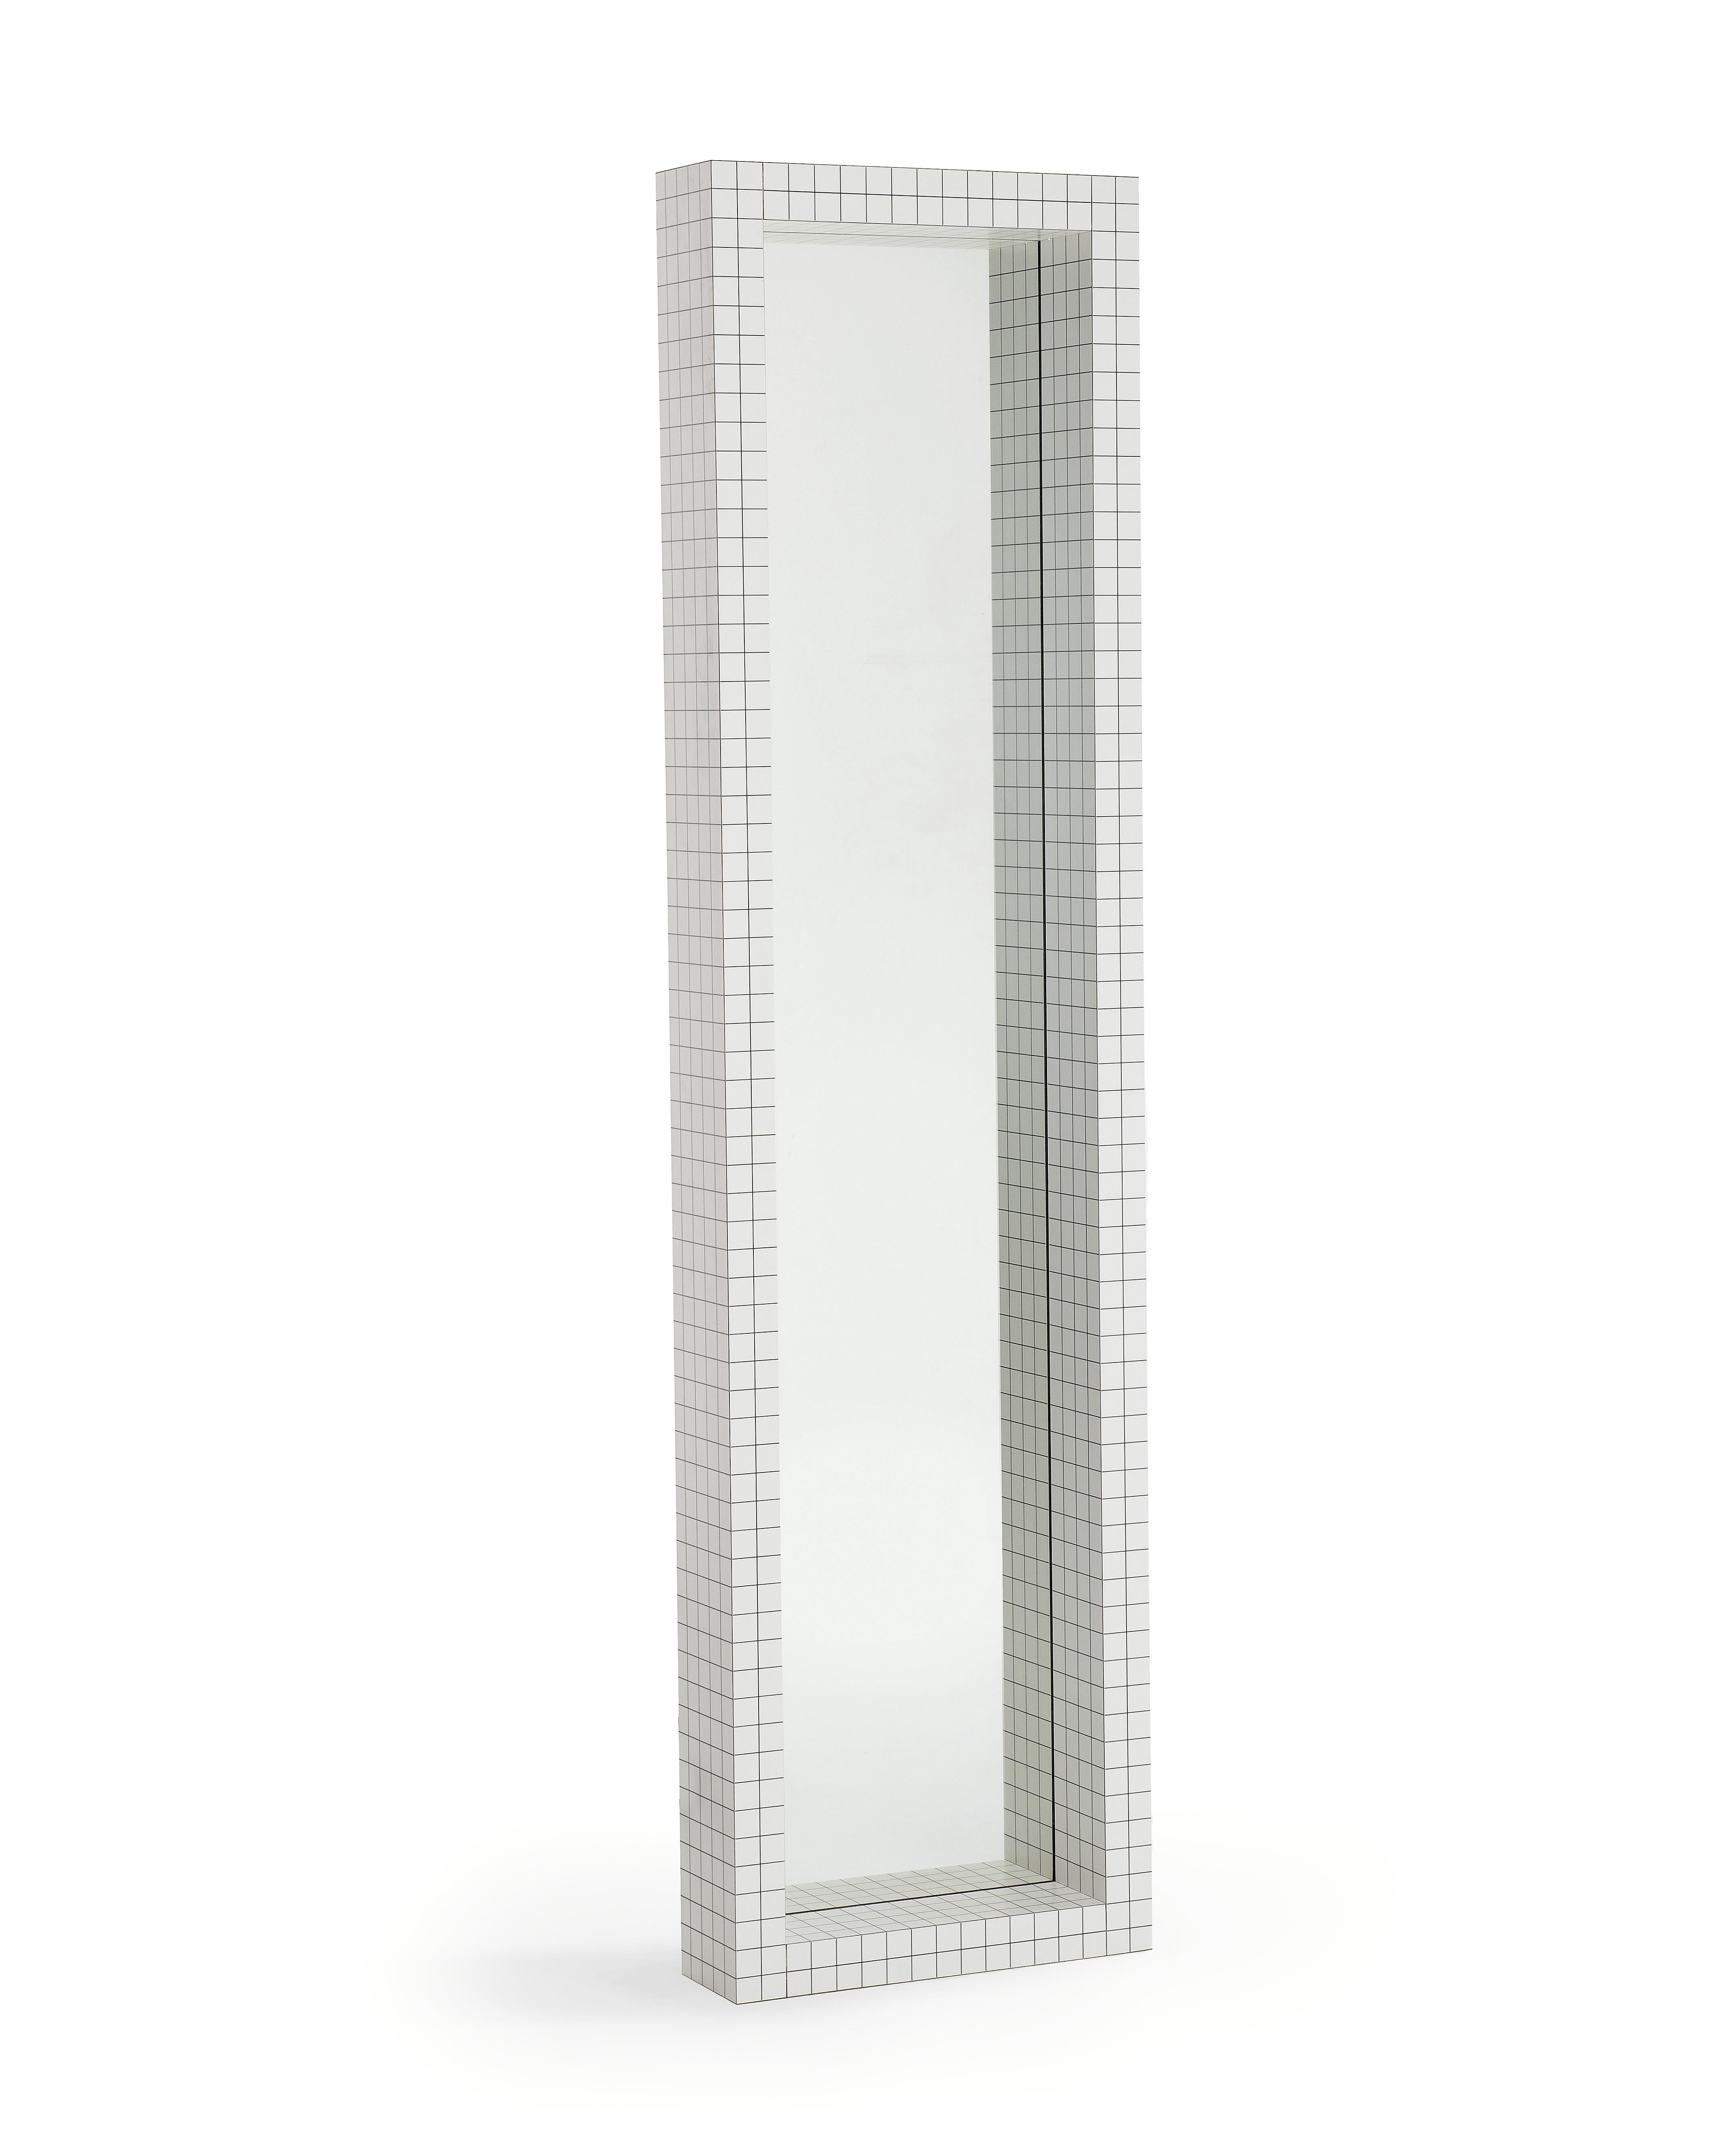 Le Quaderna Mirror s'inspire du module de sculpture 'Measuring Mirror' que les architectes du groupe ont utilisé pour étudier l'effet de la super surface continue et potentiellement infinie. Une plaque de verre de 5 mm d'épaisseur est contenue en